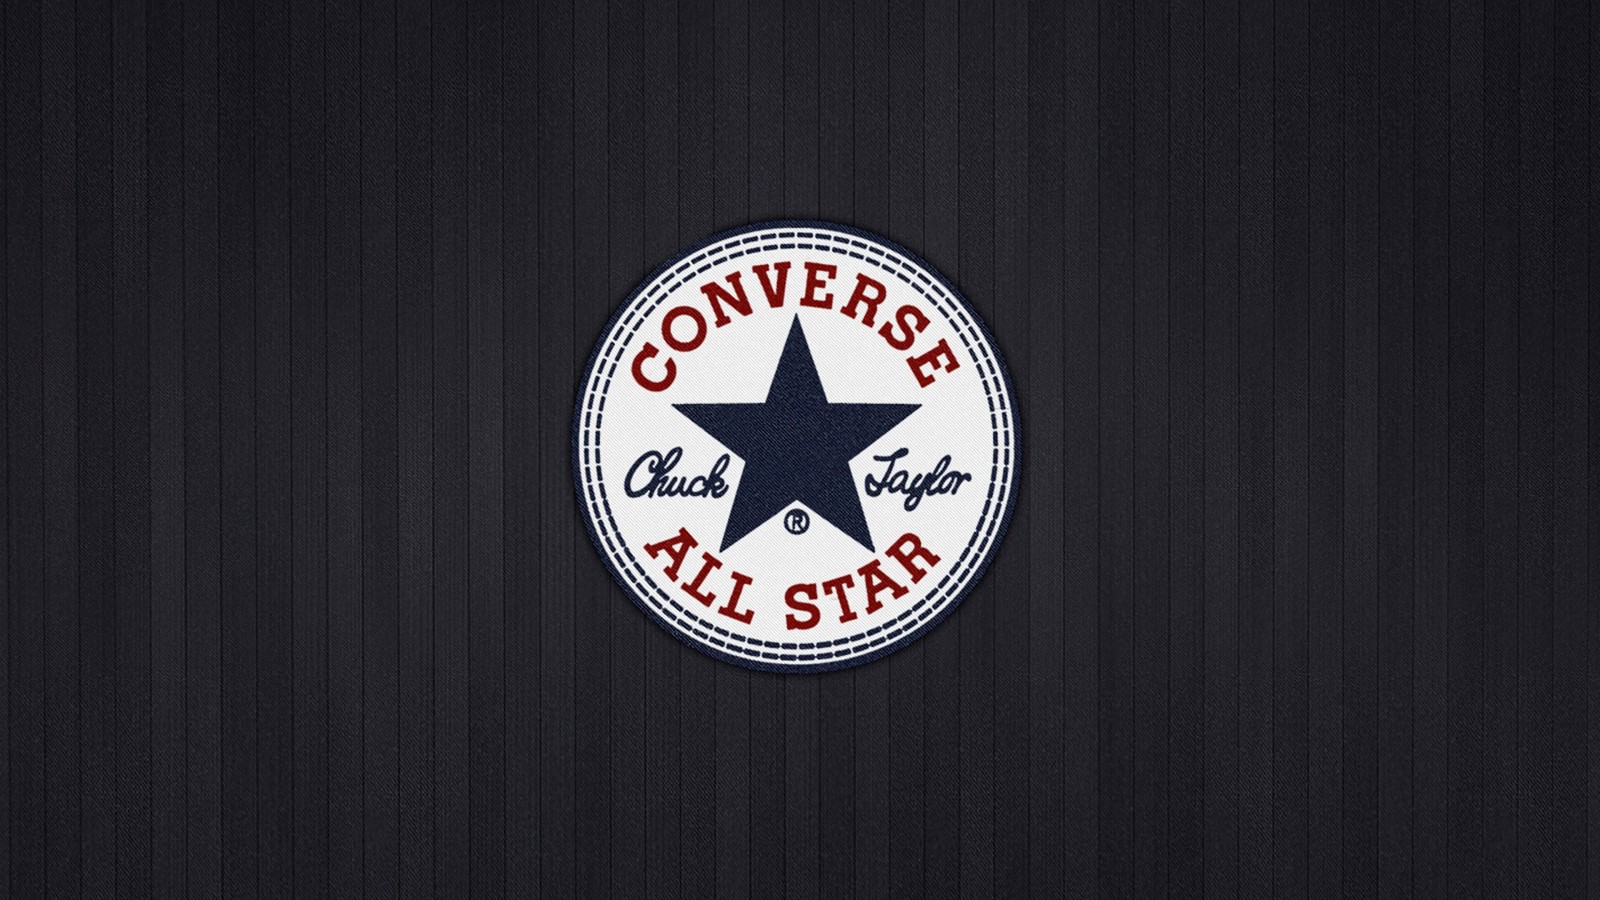 Converse All Star Wallpaper for Desktop 1600x900